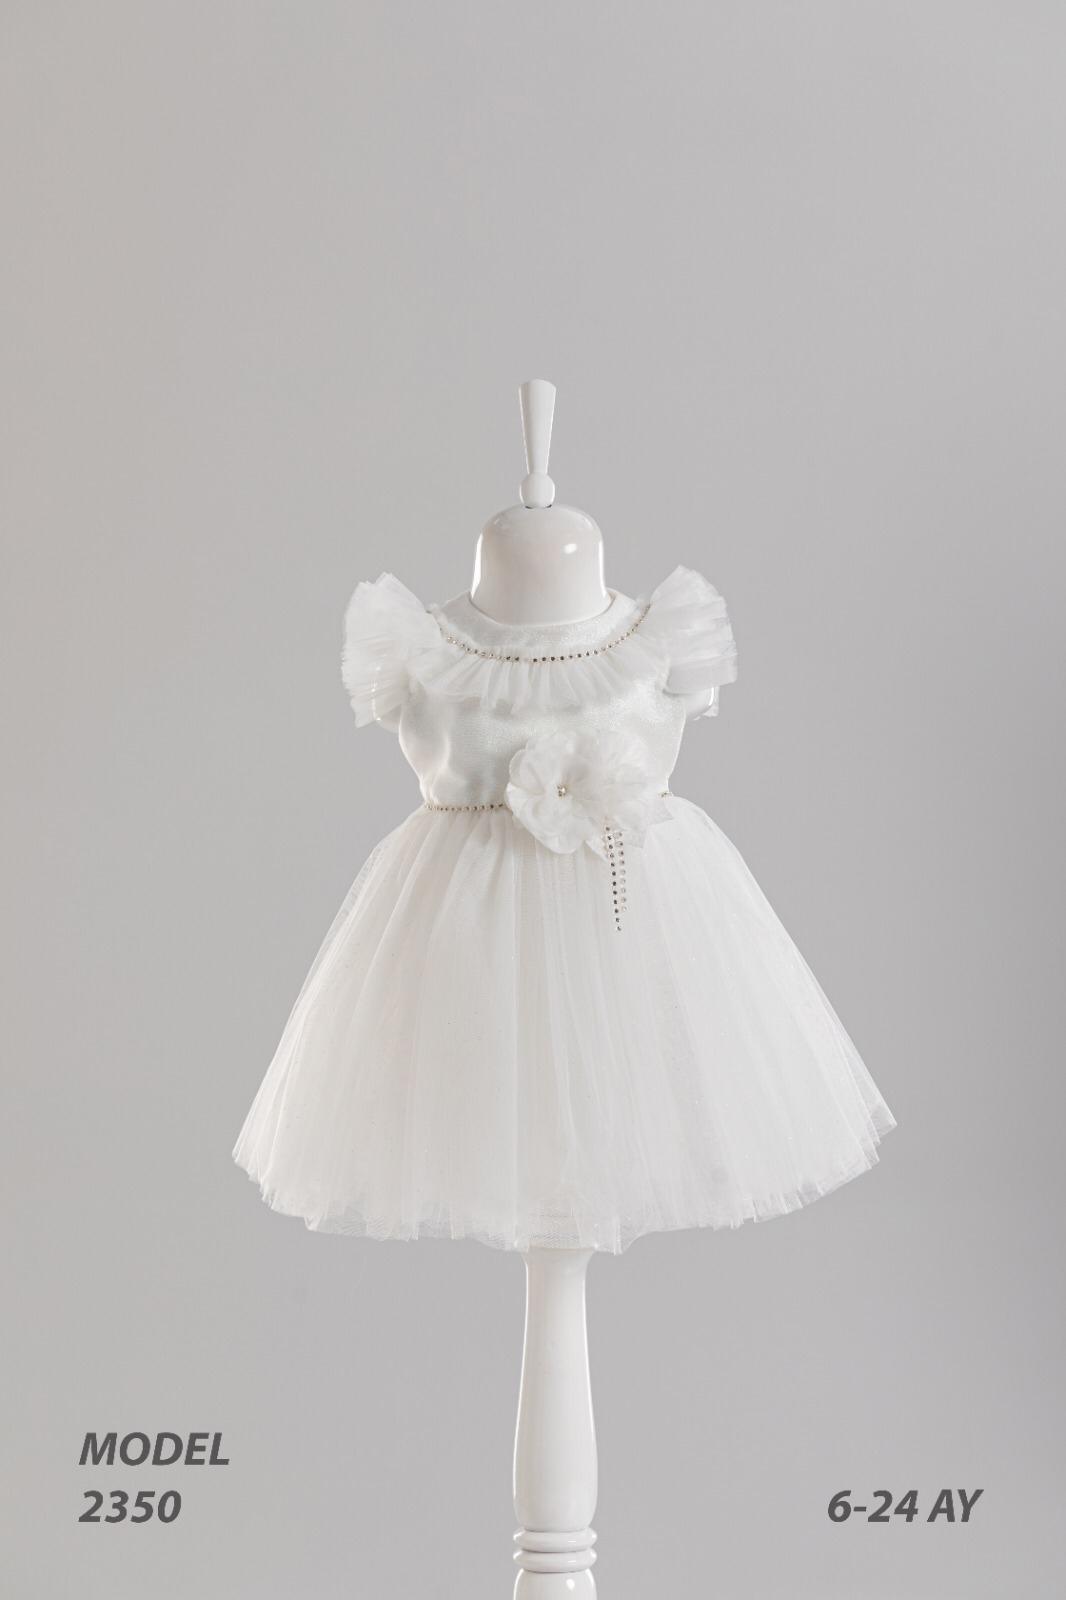 Baby Lovely White Dress 2350